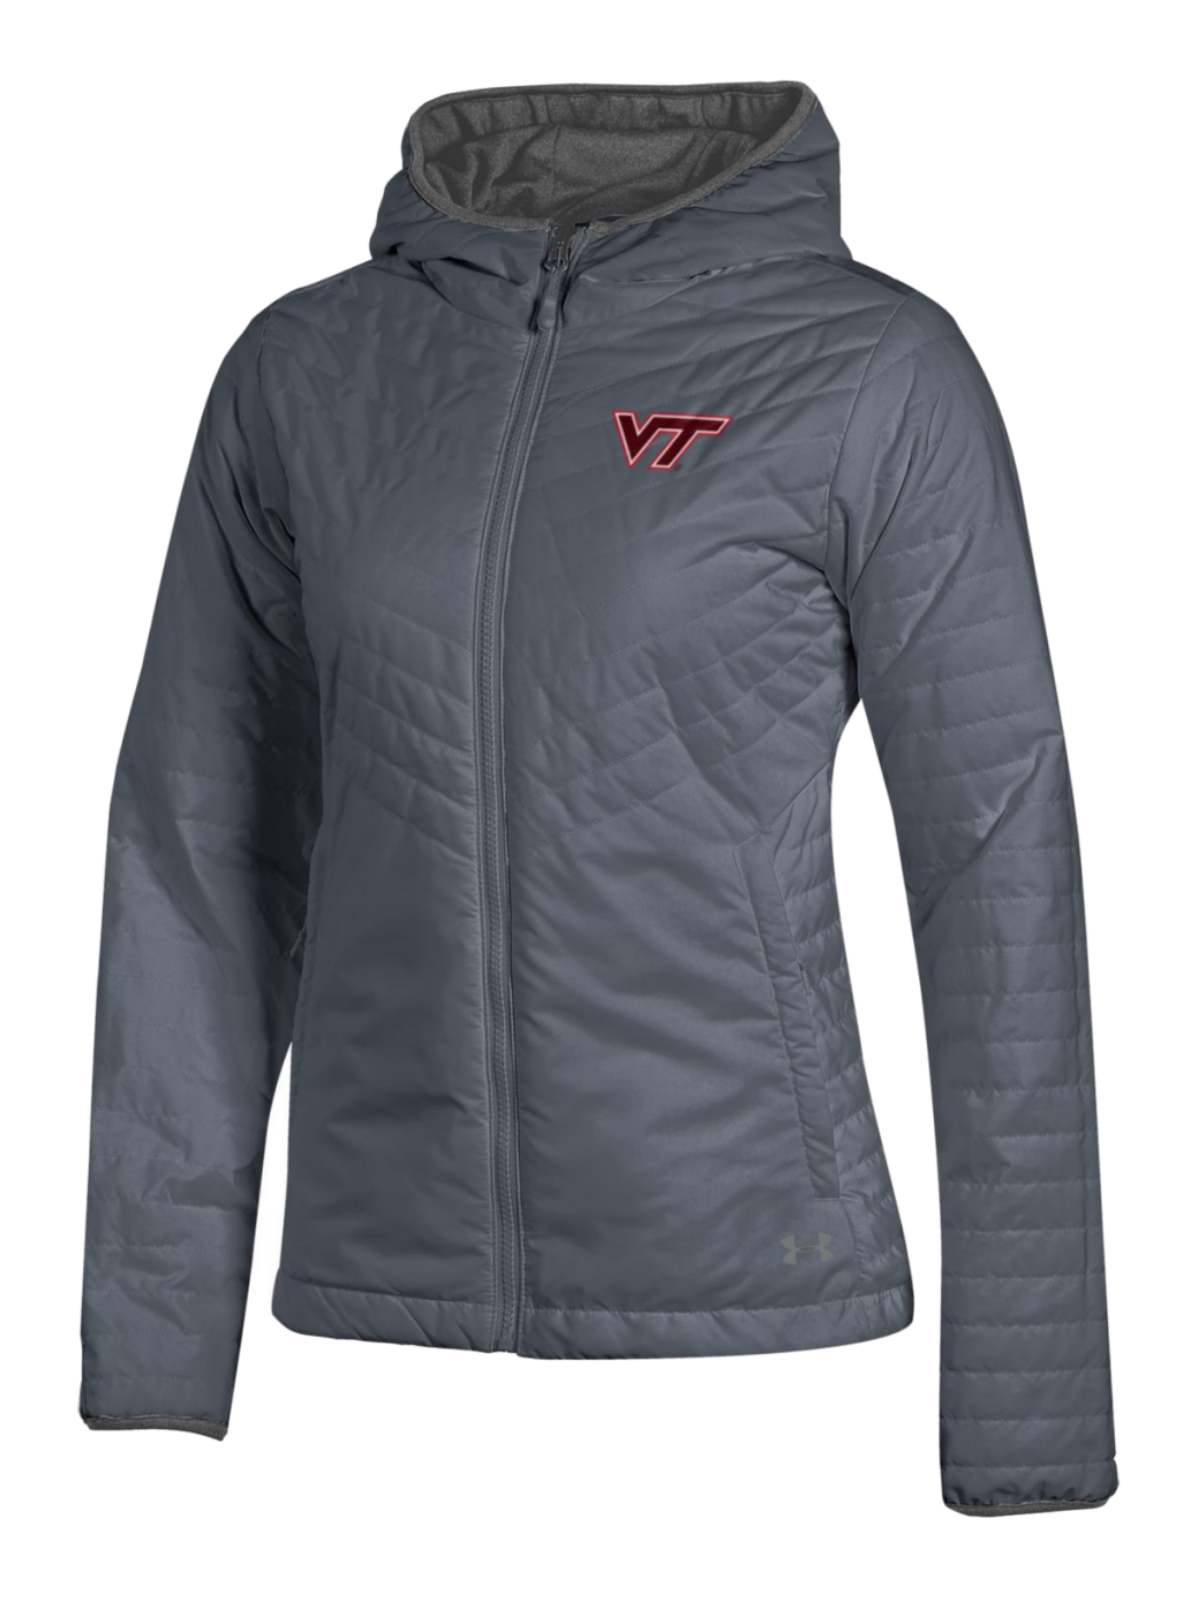 Under Armour Virginia Tech Hokies  WOMEN'S Storm Lightweight Puffer Jacket